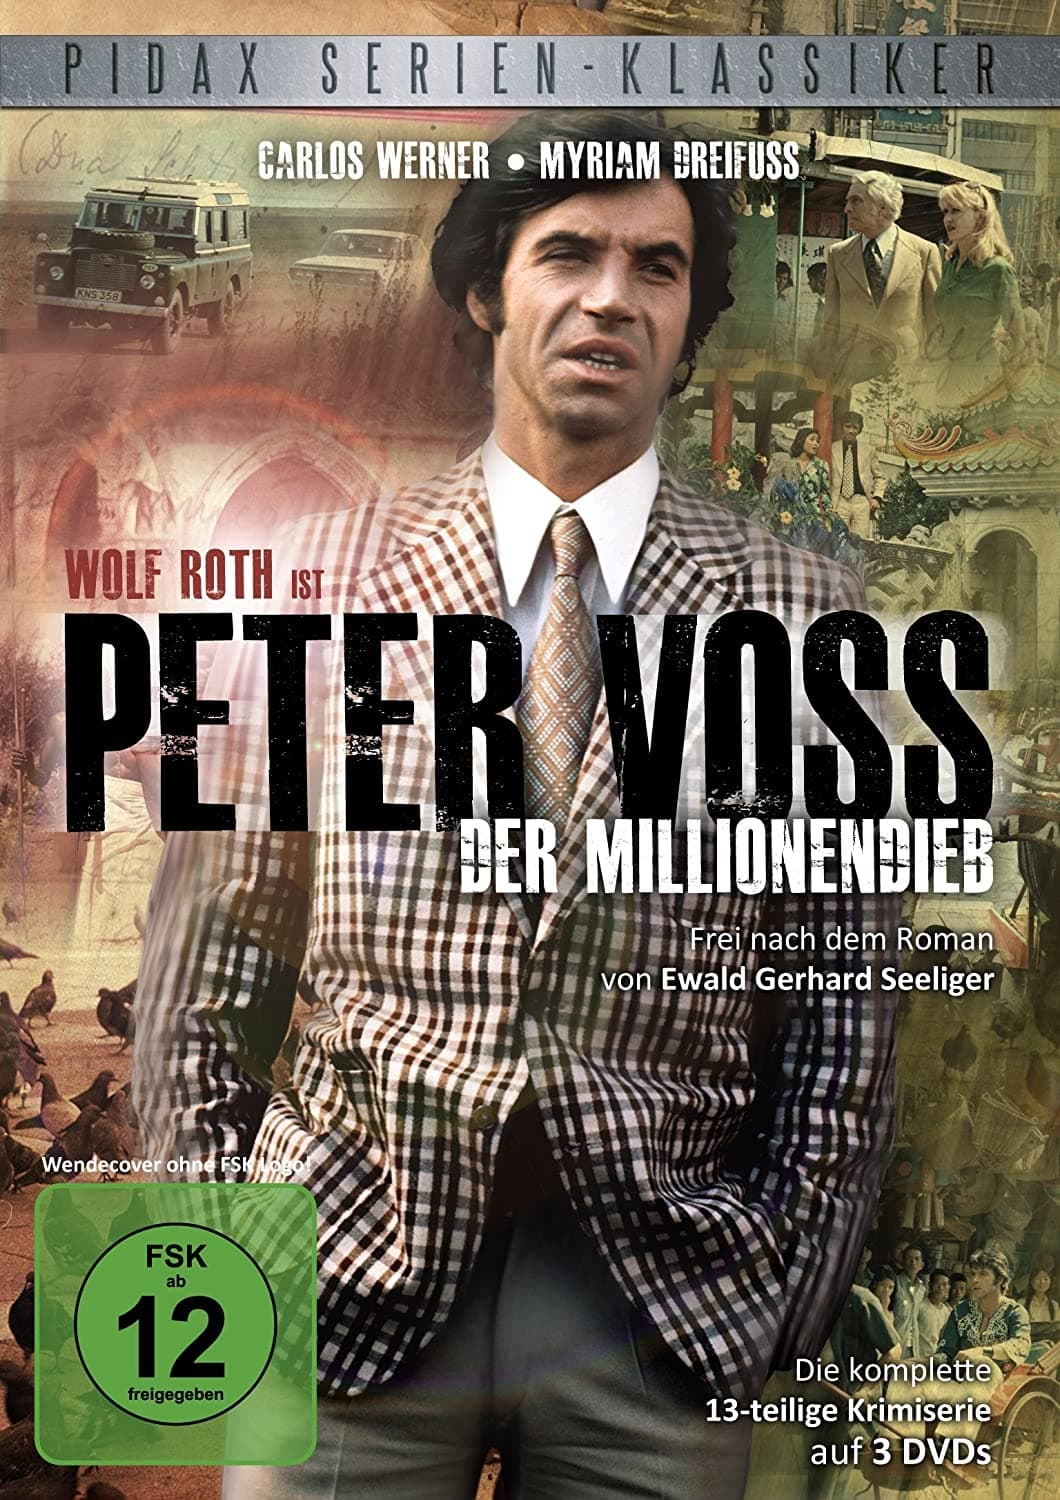 Peter Voss, der Millionendieb